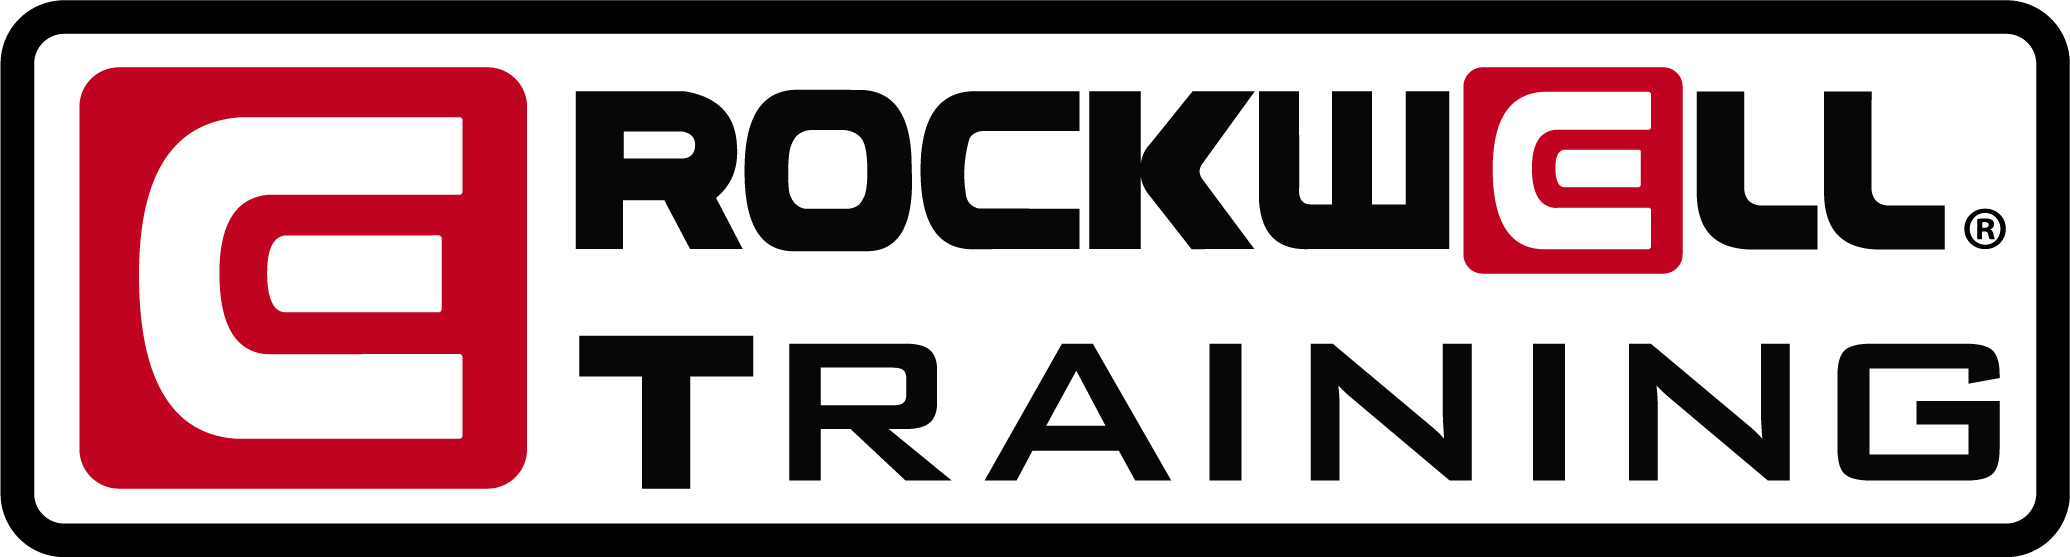 Rockwell Training Online Program